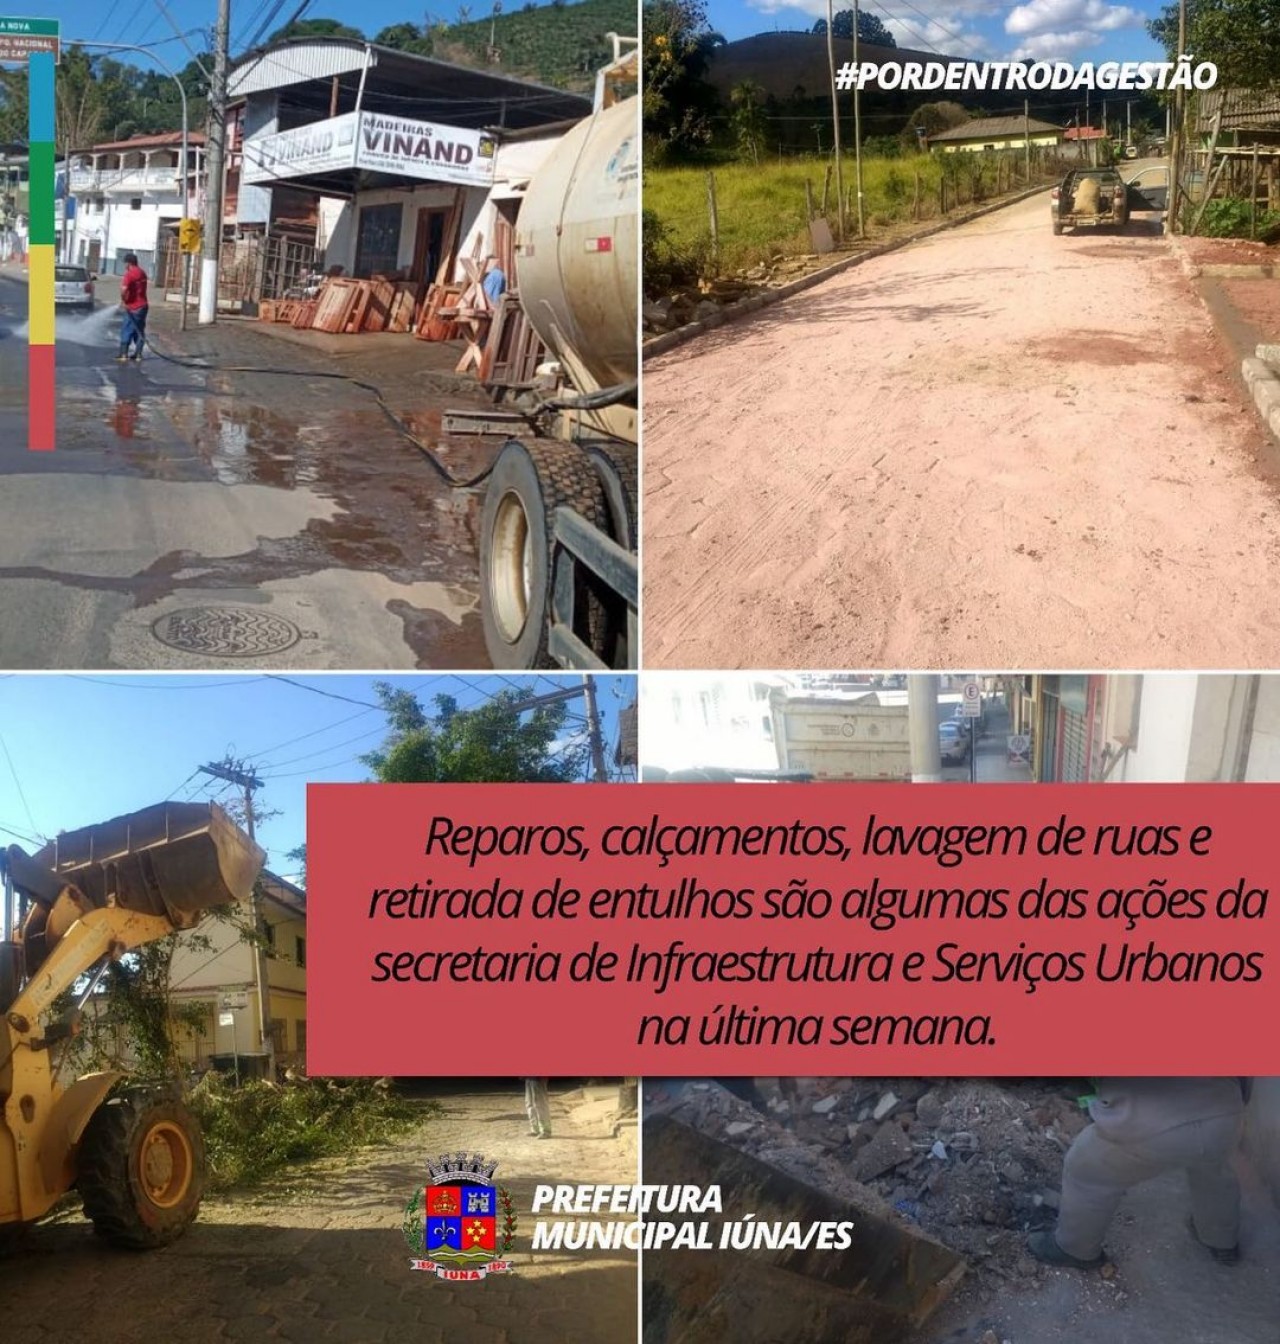 OBRA 160 - Construção de rede de esgoto e manilhamentos próximo do Campo no Distrito Nossa Senhora Das Graças Perdição